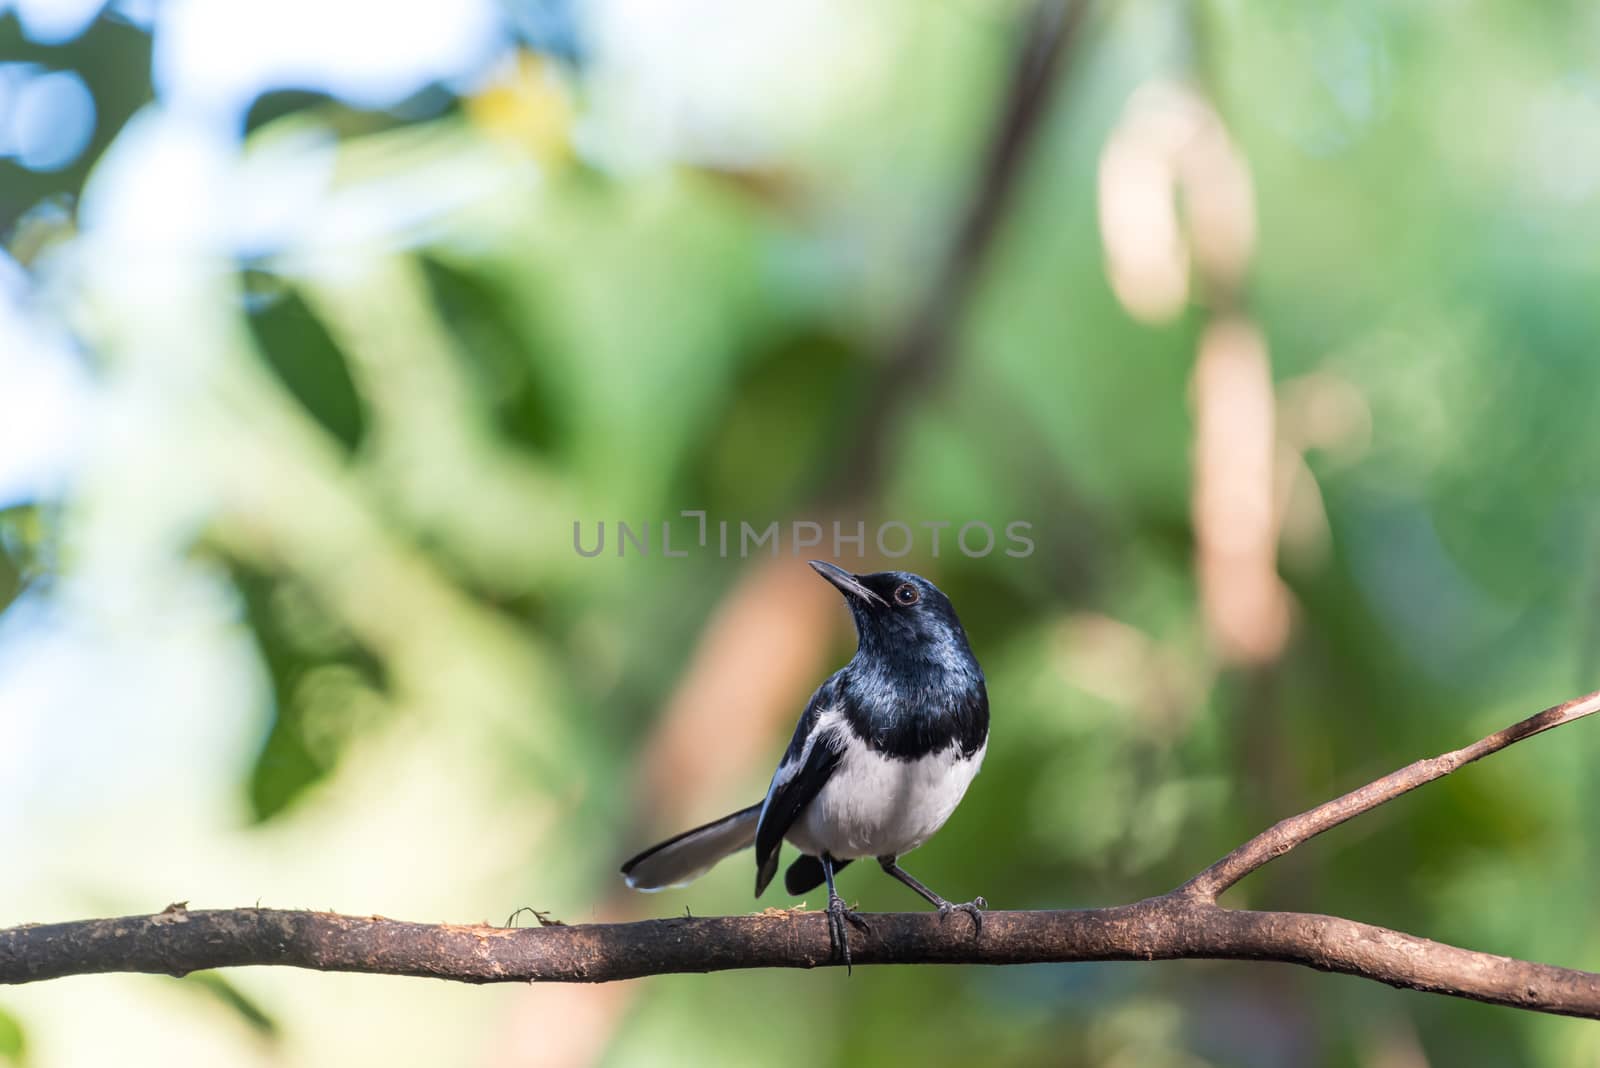 Bird (Oriental magpie-robin) in a nature wild by PongMoji